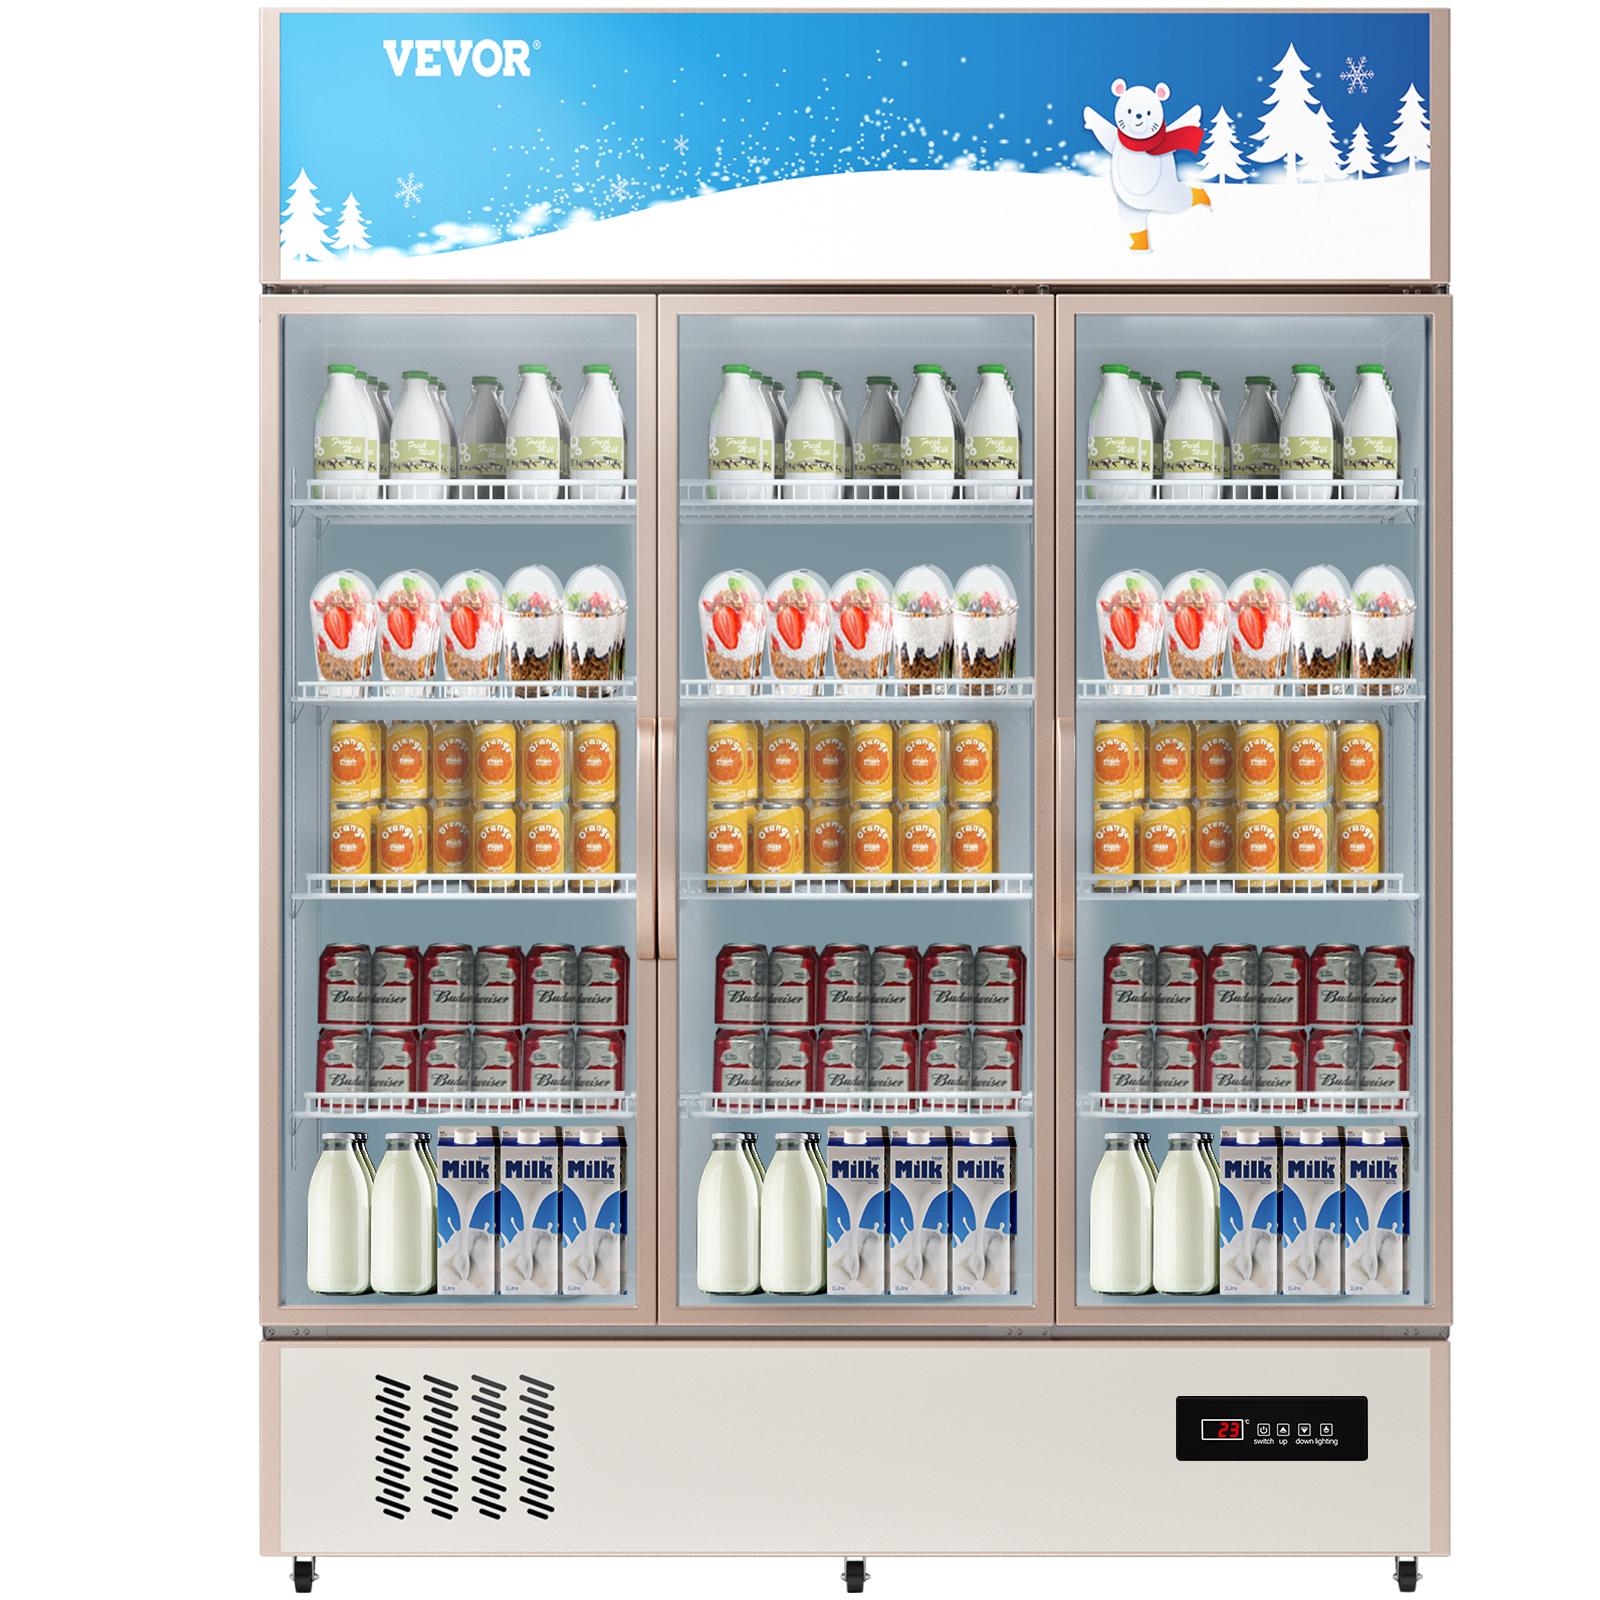 beverage refrigerator,35 cu ft,3 doors